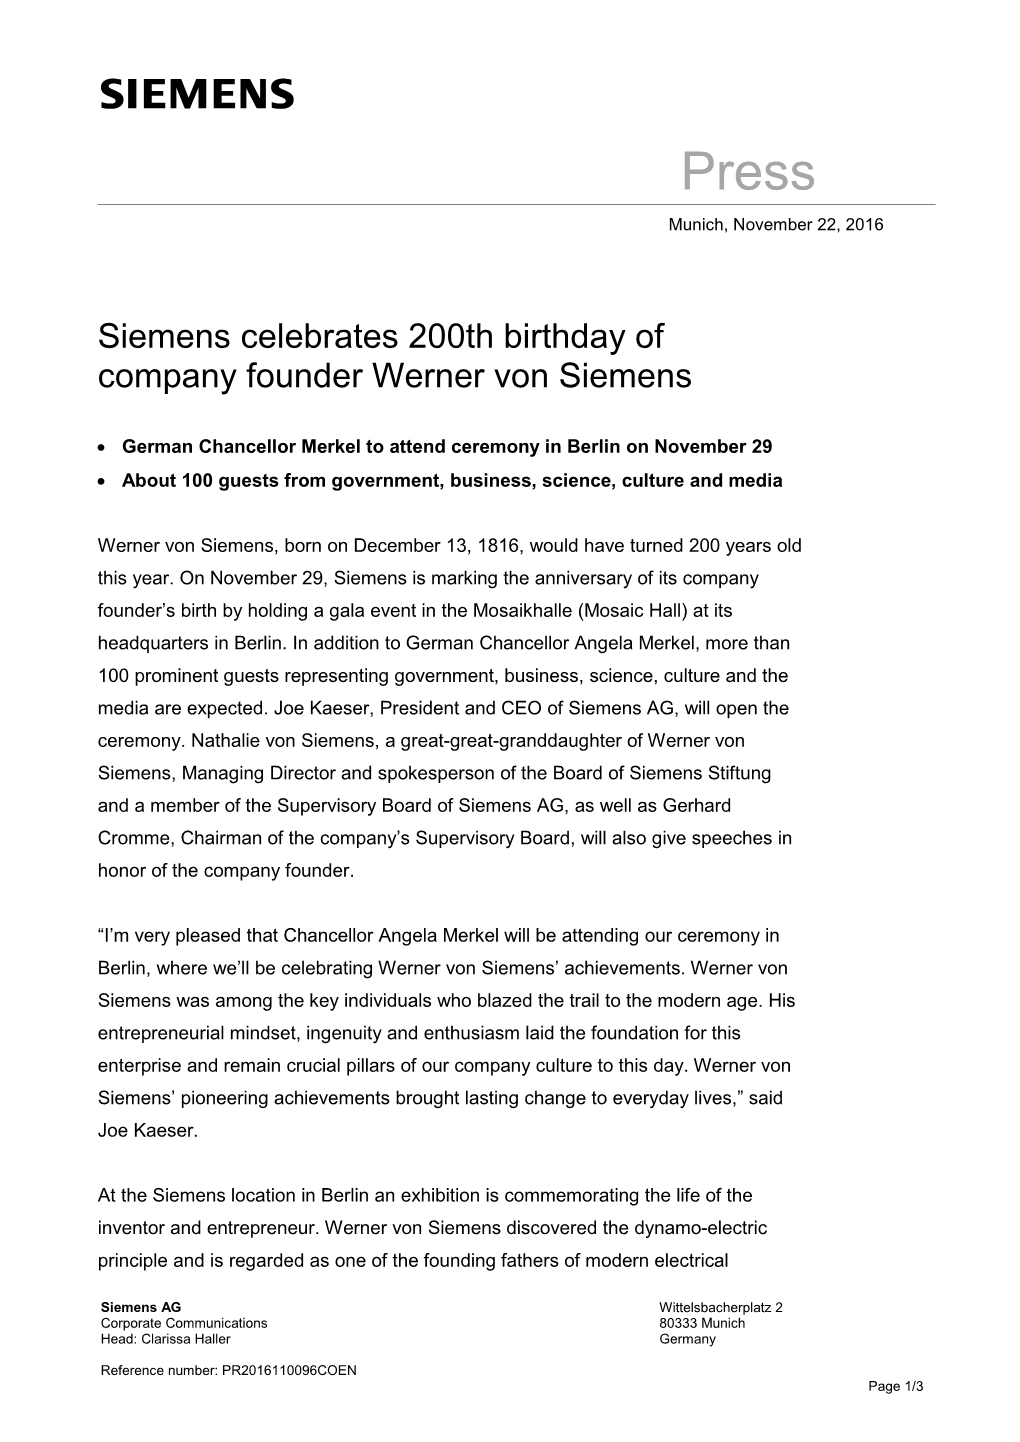 Siemens Celebrates 200Th Birthday of Company Founder Werner Von Siemens